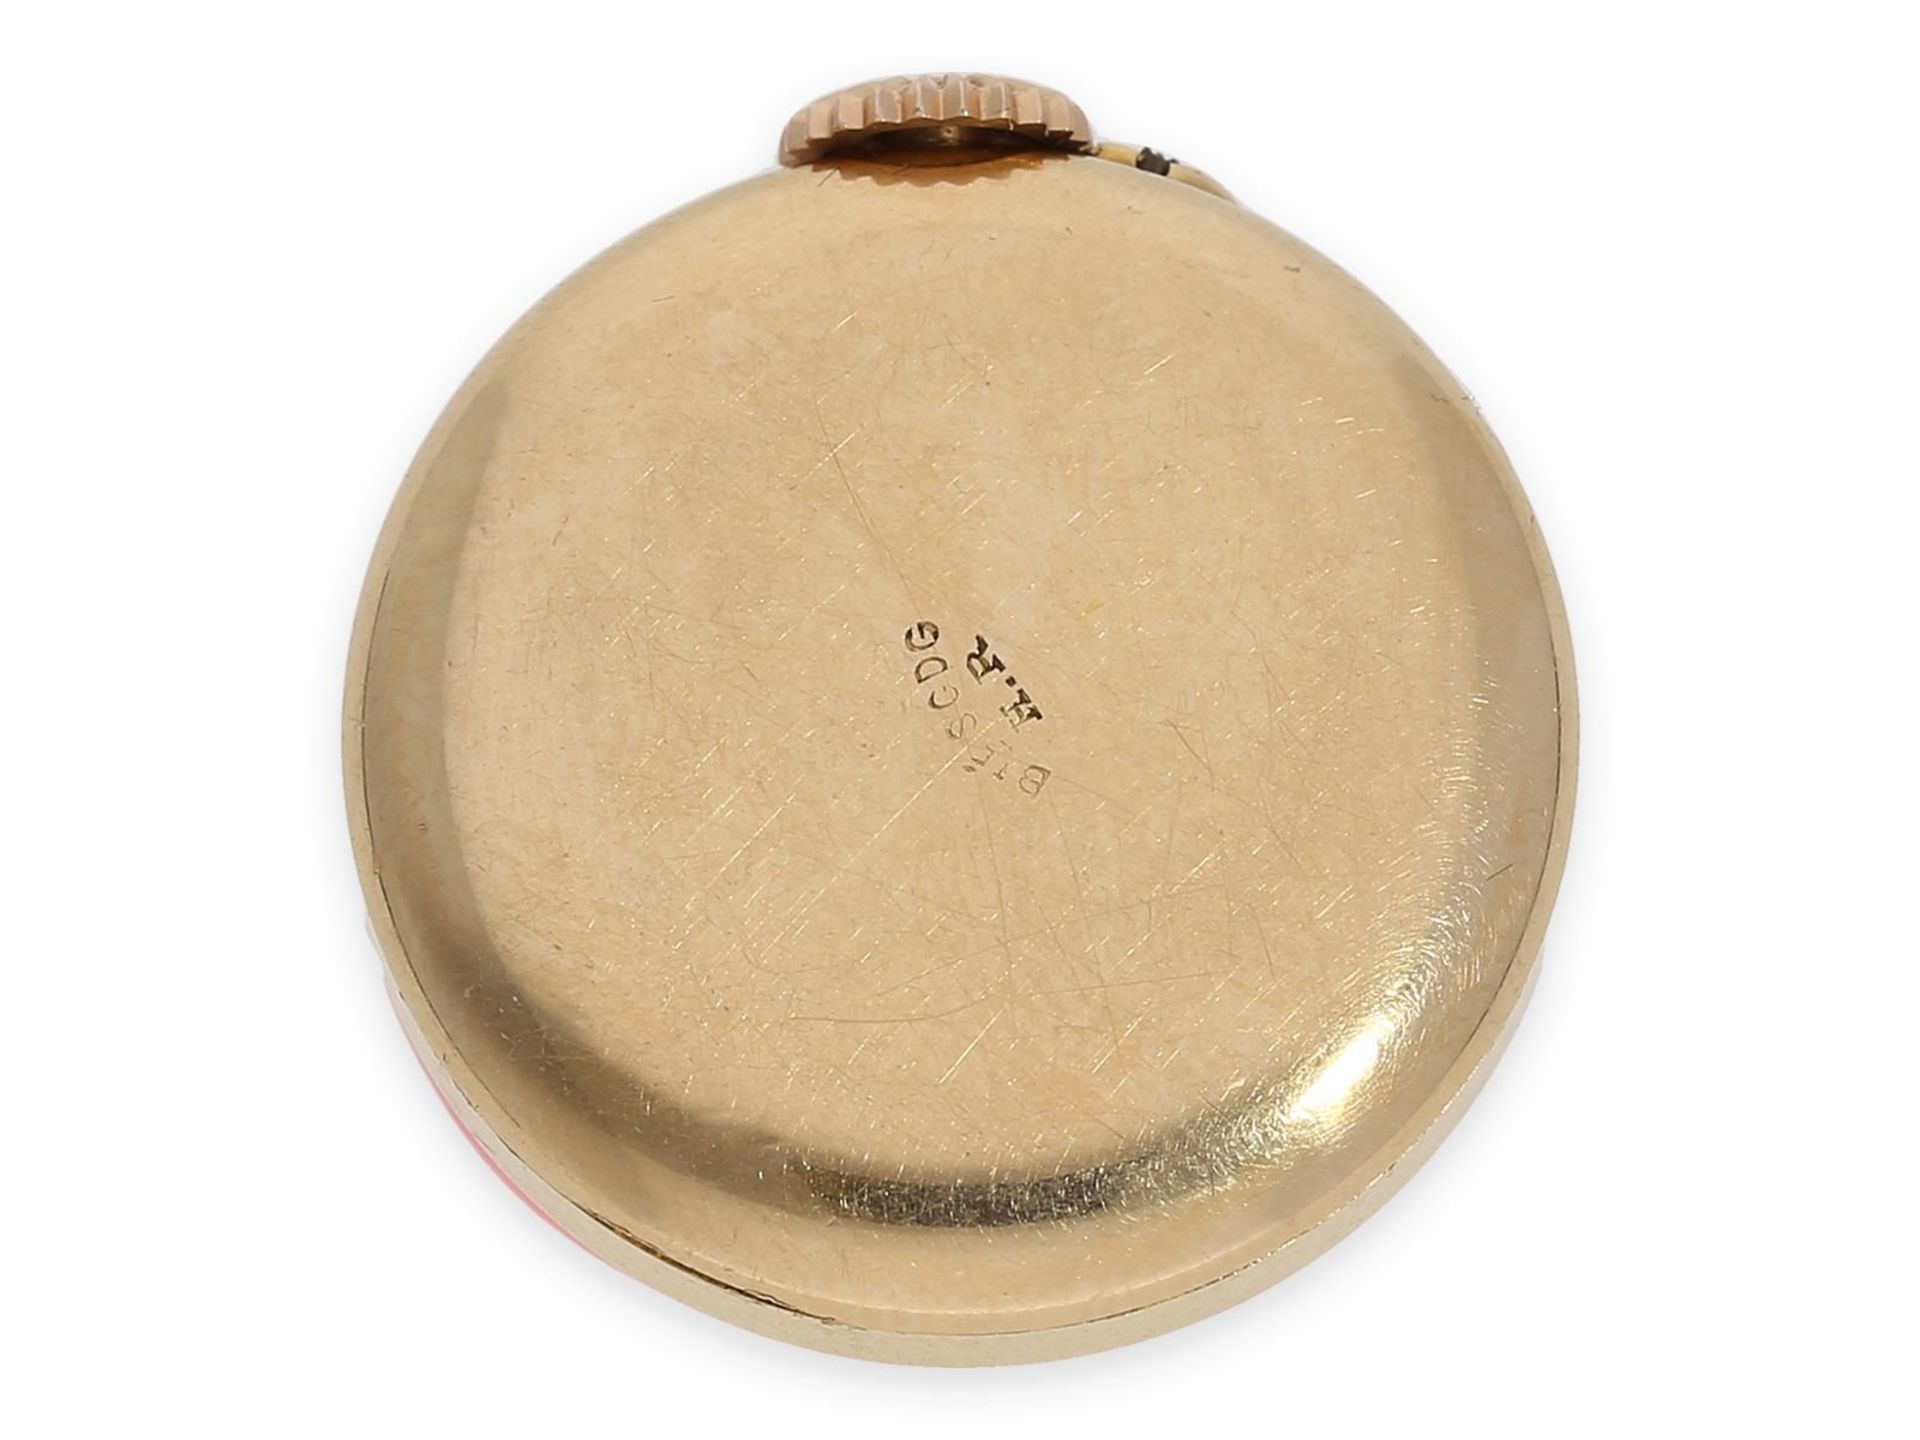 Knopfloch-Uhr: extrem rare Knopflochuhr in 18K Gold mit Diamant- und Rubinbesatz, punziert "bté s.g. - Bild 3 aus 5